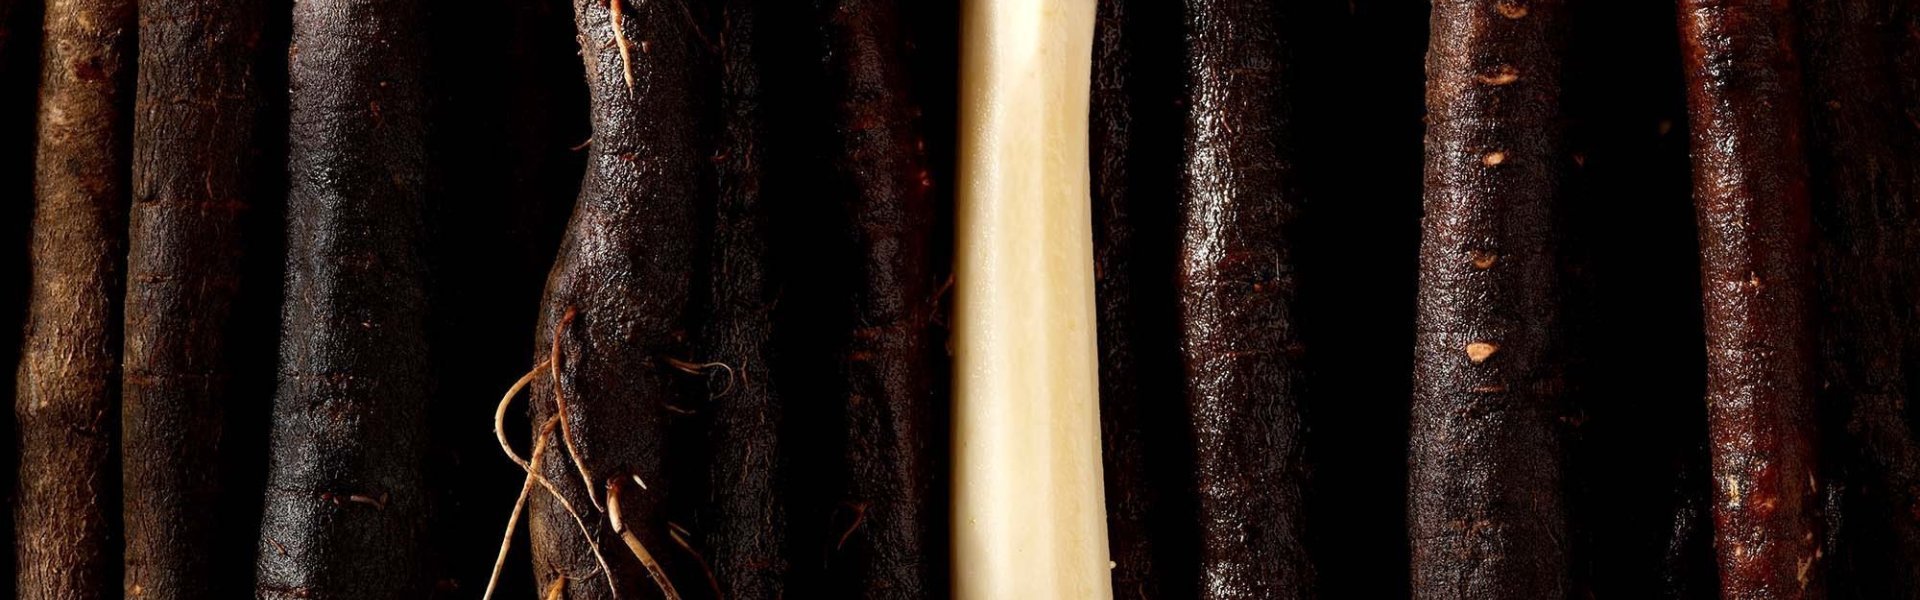 Sfeerbeeld van verschillende ongeschilde schorseneren. Hun bruine, bijna zwarte, kleur schittert onder de belichting. In het midden ligt 1 geschilde schorseneer, spierwit te blinken.